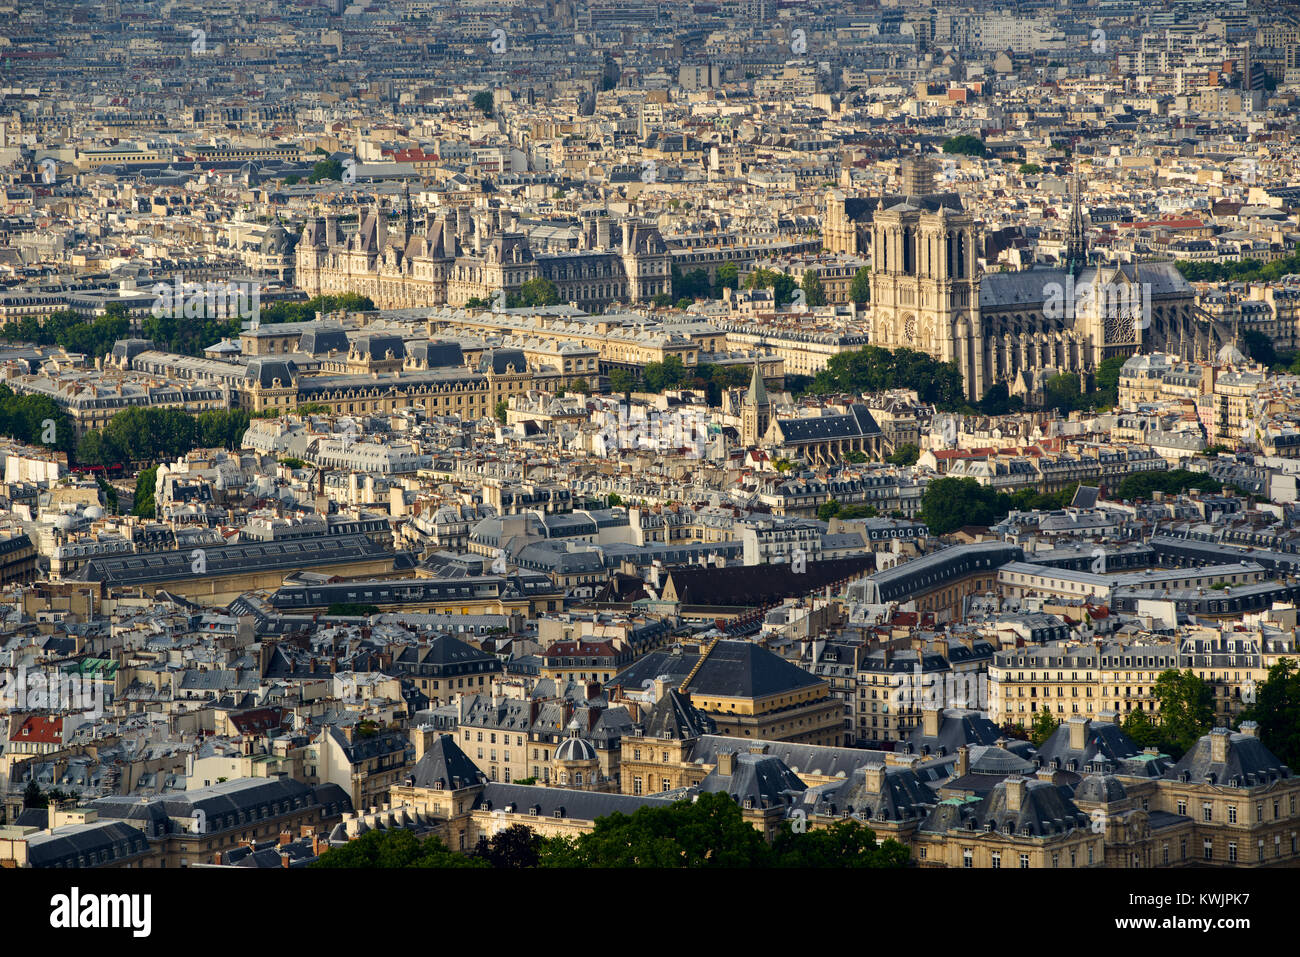 Vue aérienne sur les toits de Paris au coucher du soleil avec la Cathédrale Notre Dame de Paris. 4e (Quartier Latin) et 6ème arrondissement, Paris, France Banque D'Images